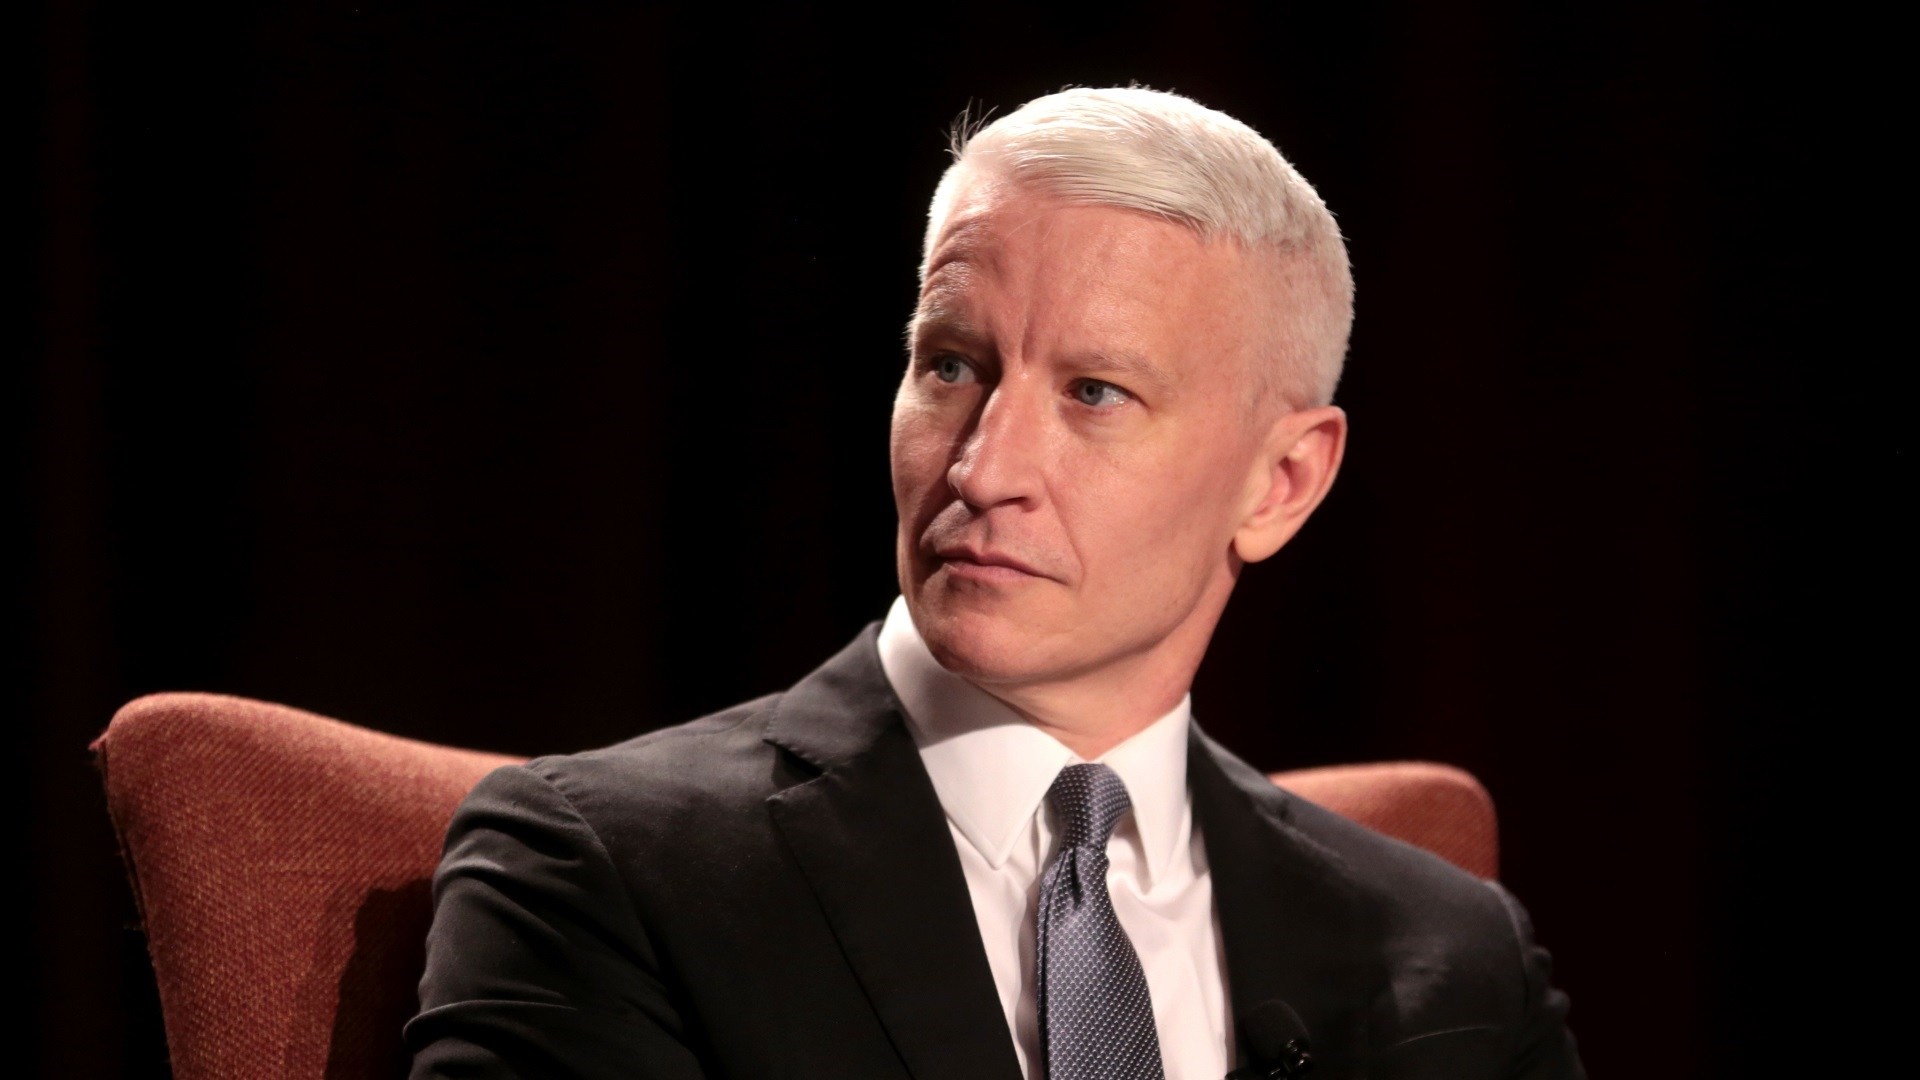 Anderson Cooper Høyde, vekt, alder, kroppsstatistikk